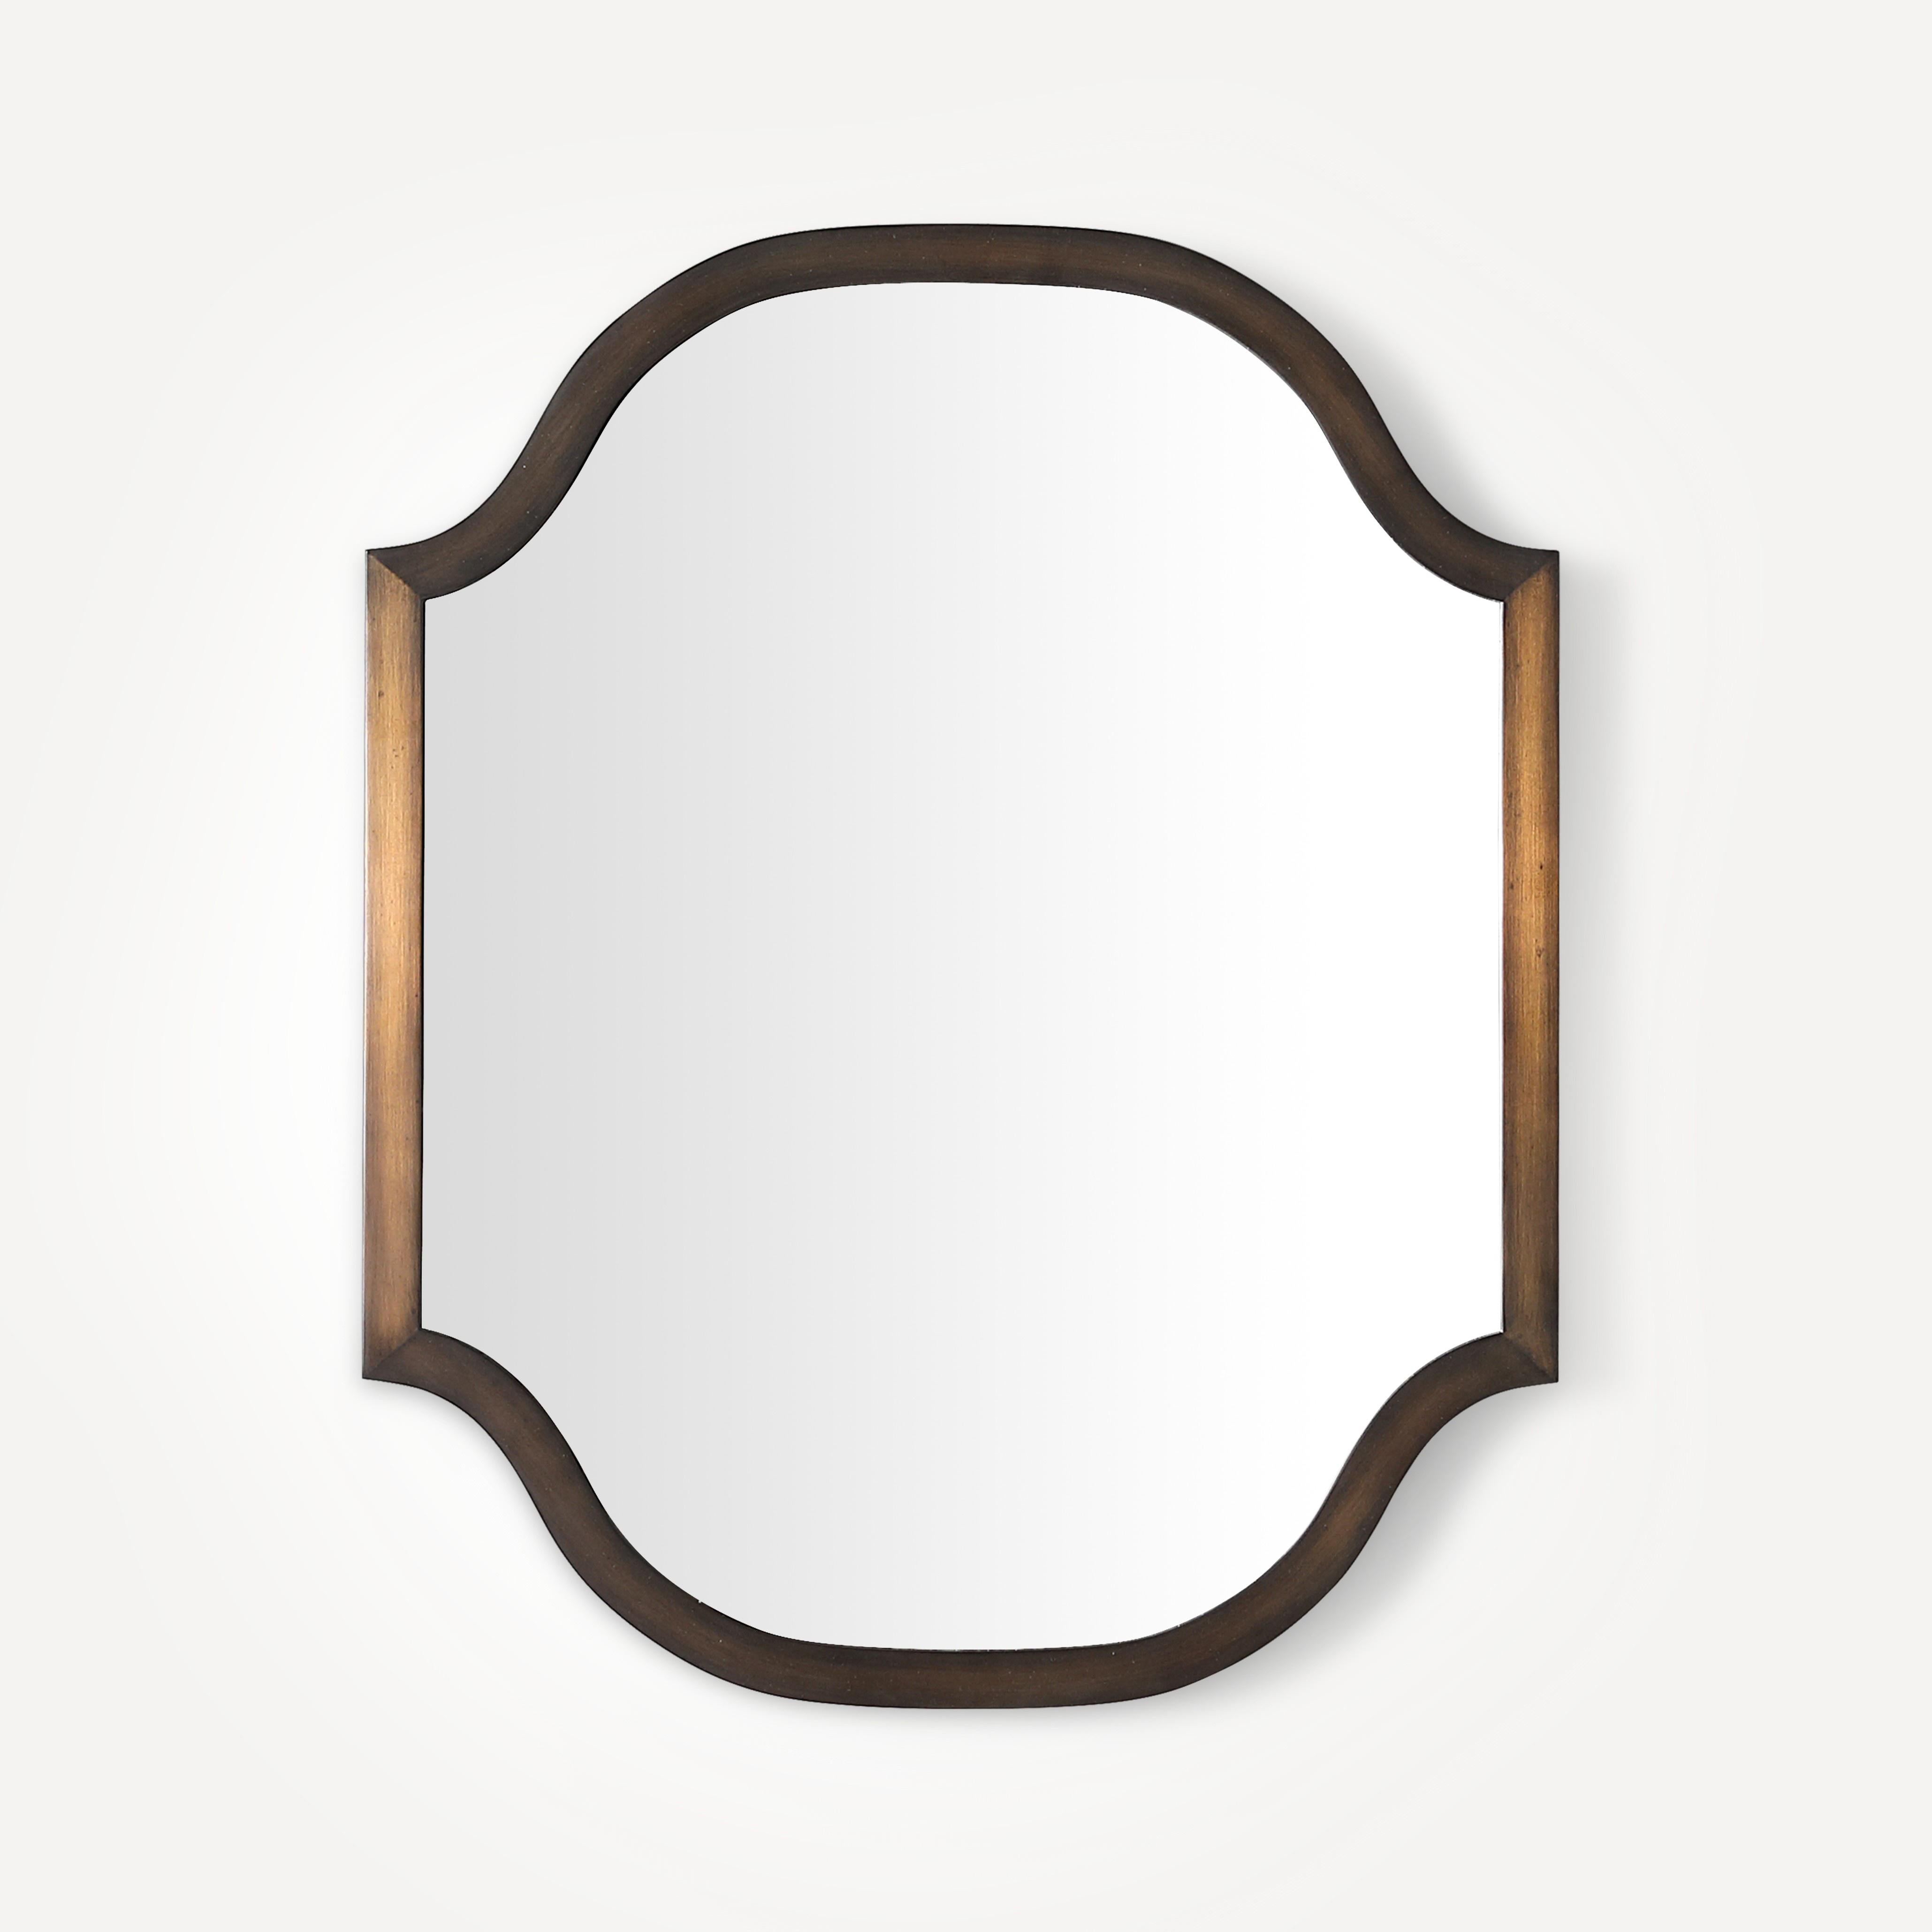 Robern Scalloped Metal Mirror, 24"x 30"x 1-3/16"